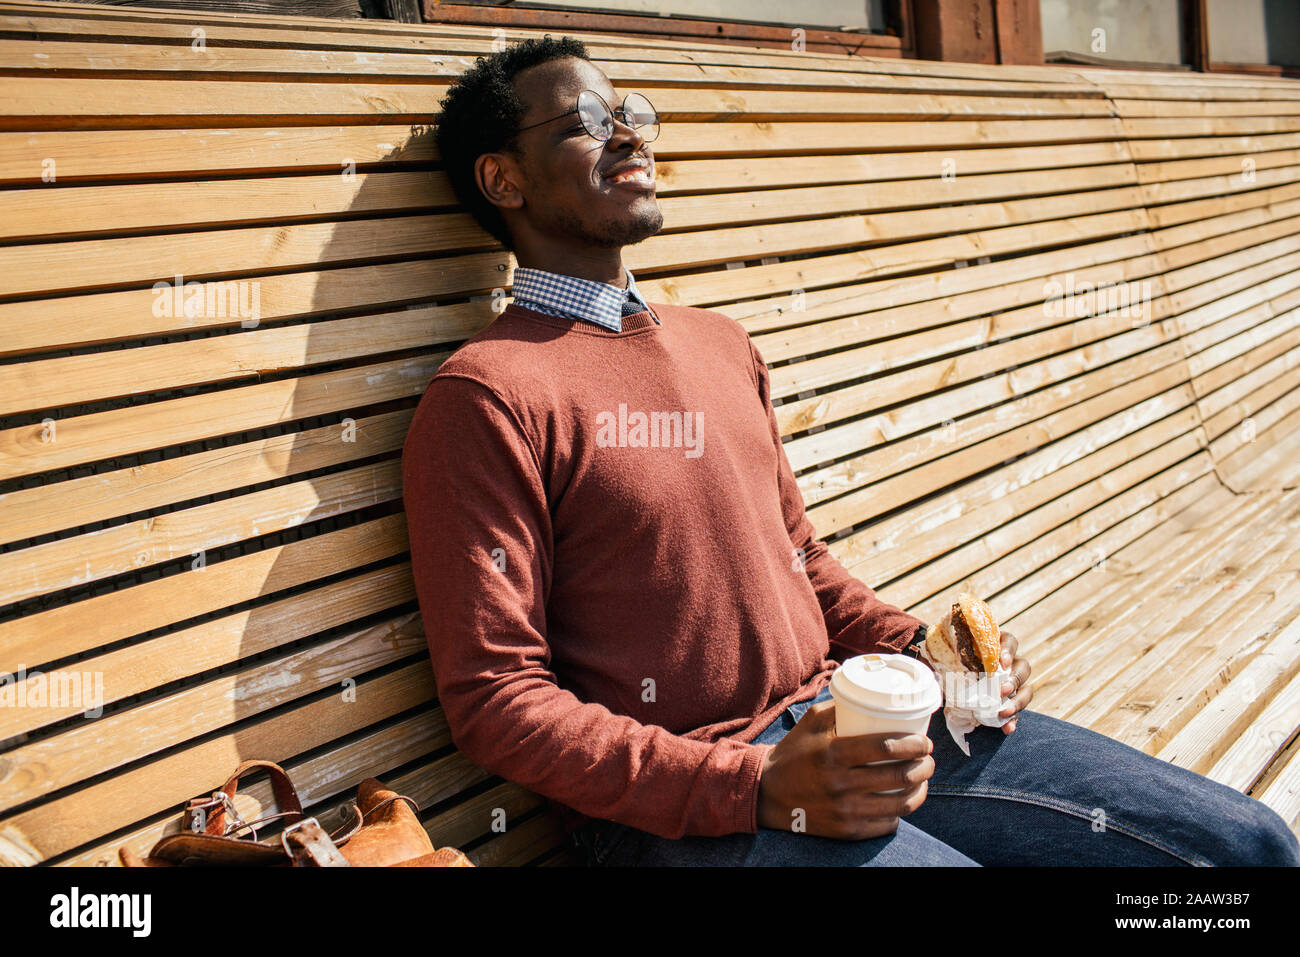 Hombre joven sentado en el banco de madera, comer hamburguesas, beber café Foto de stock